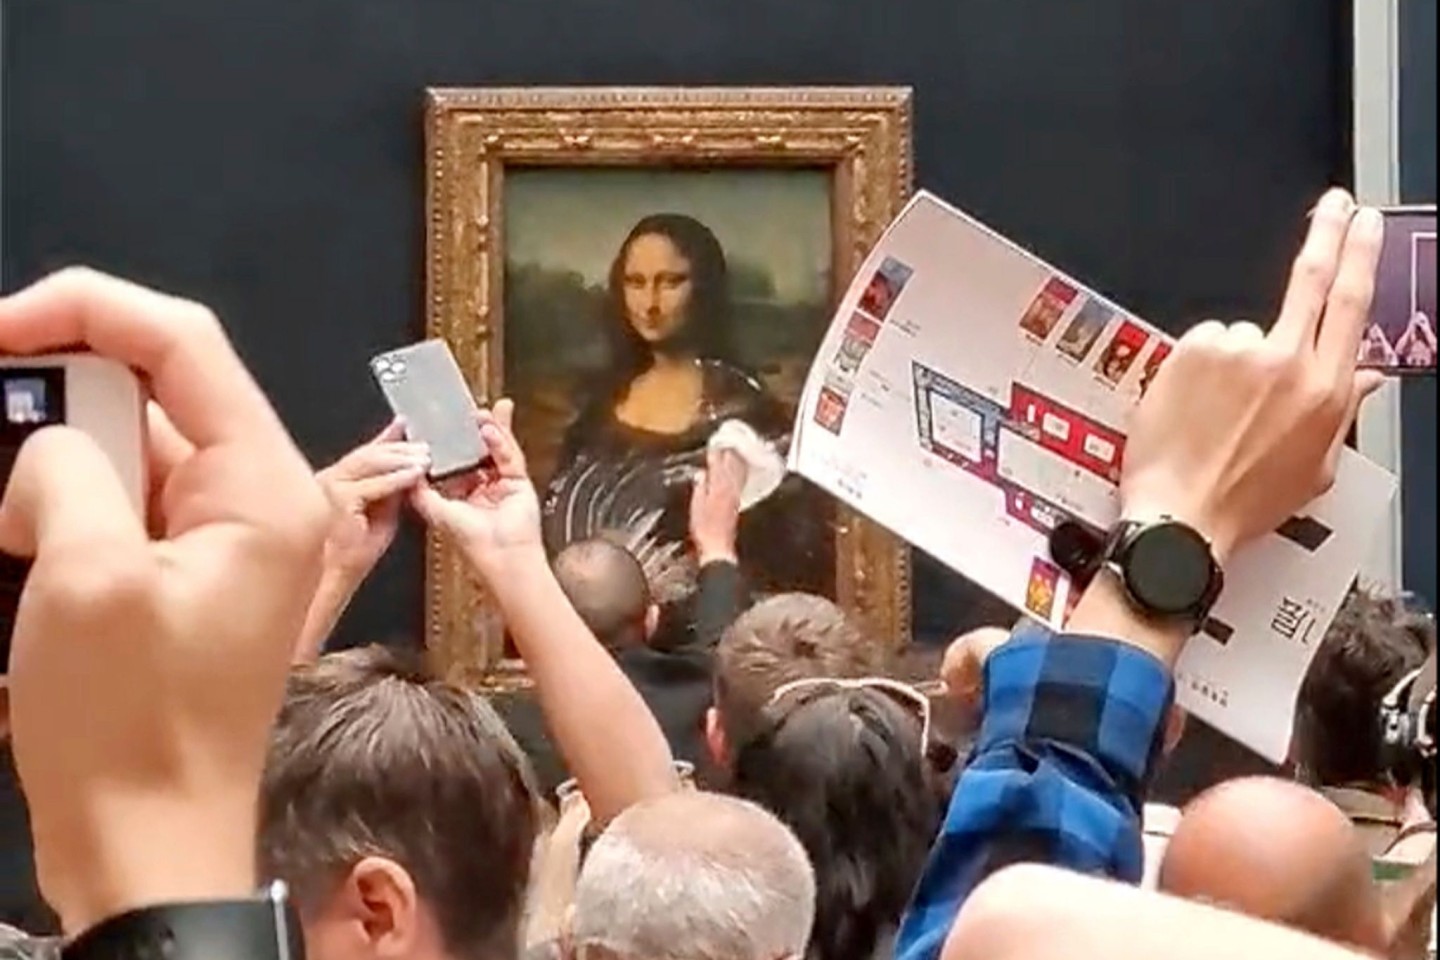 Das Gemälde von Leonardo da Vinci wurde mit einem Tortenstück beworfen - aber dabei glücklicherweise nicht beschädigt.